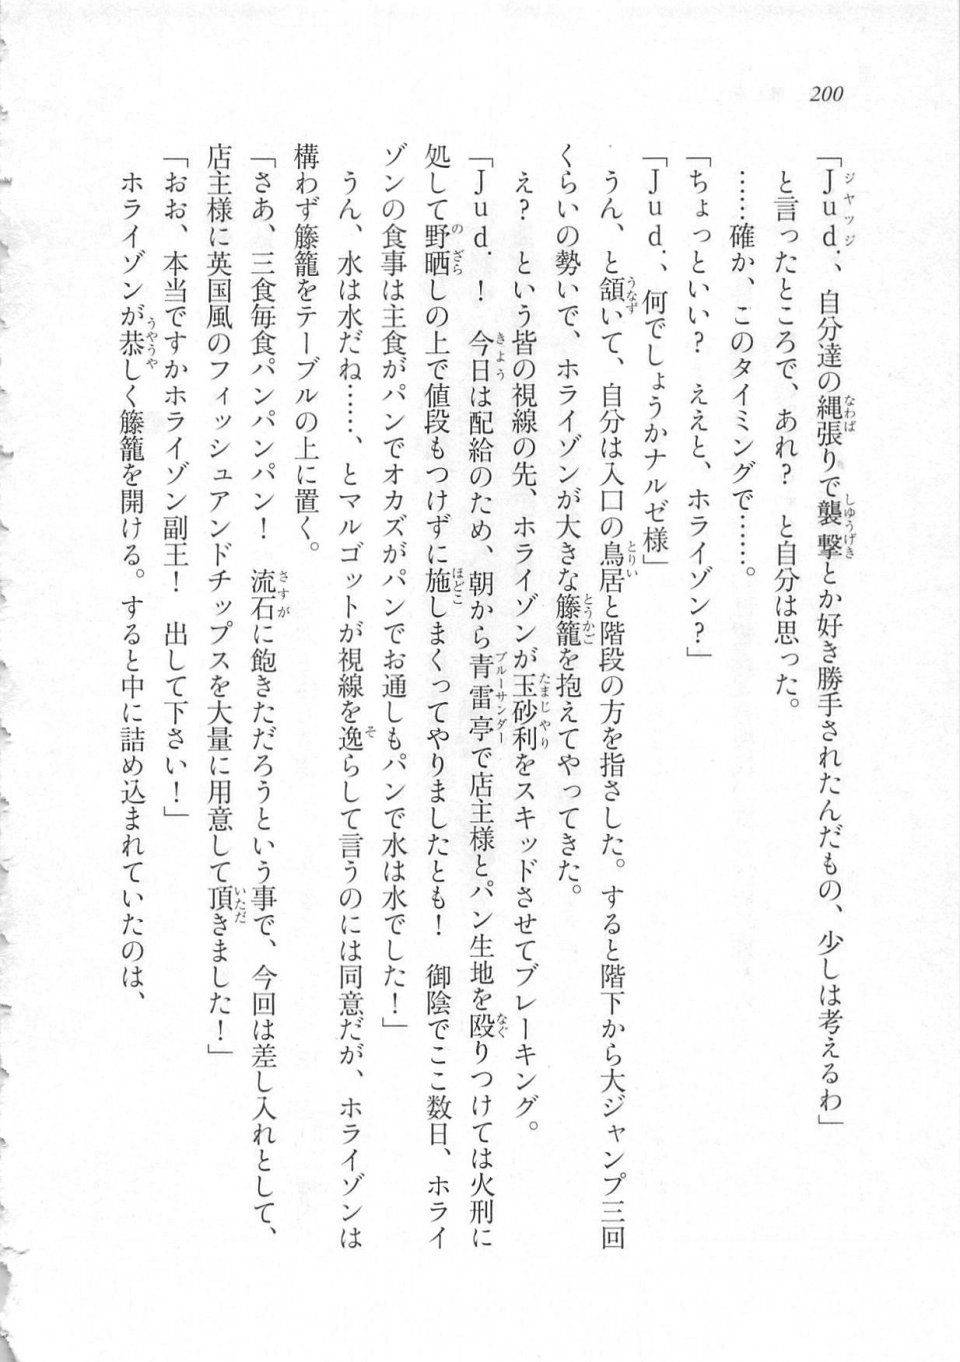 Kyoukai Senjou no Horizon LN Sidestory Vol 3 - Photo #204